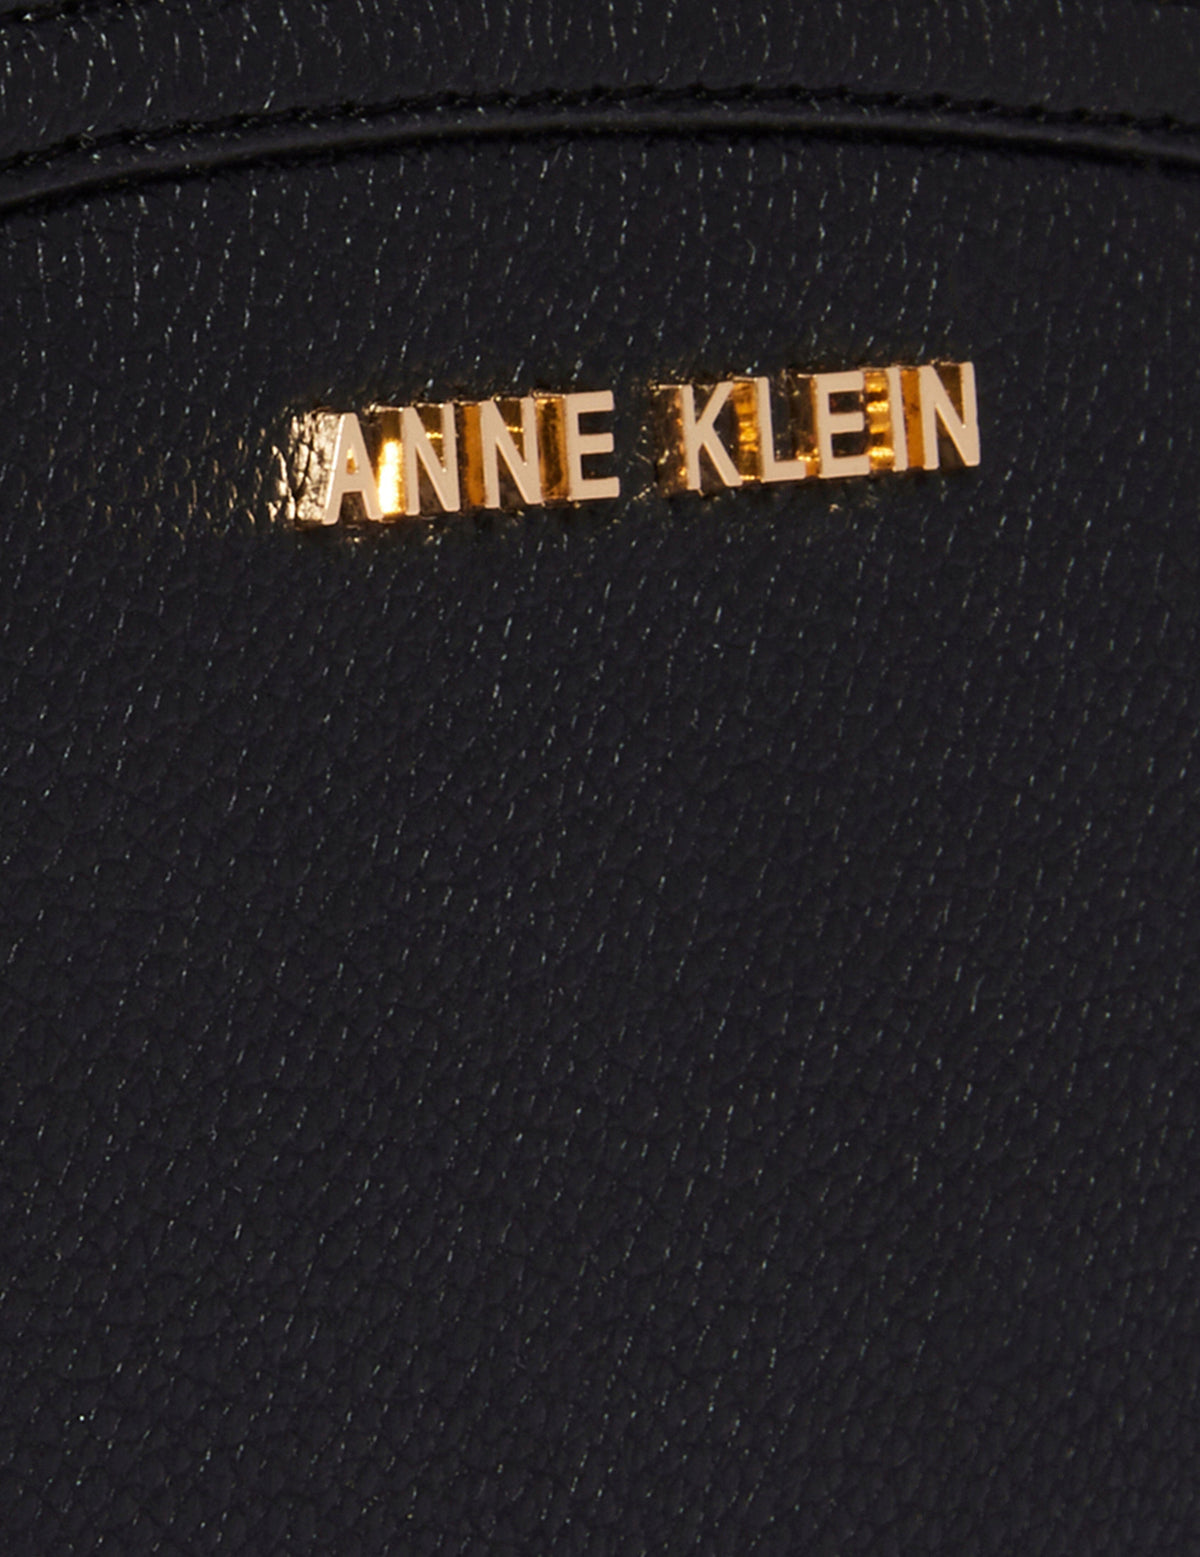 Anne Klein  Anne Klein Small Curved Wallet